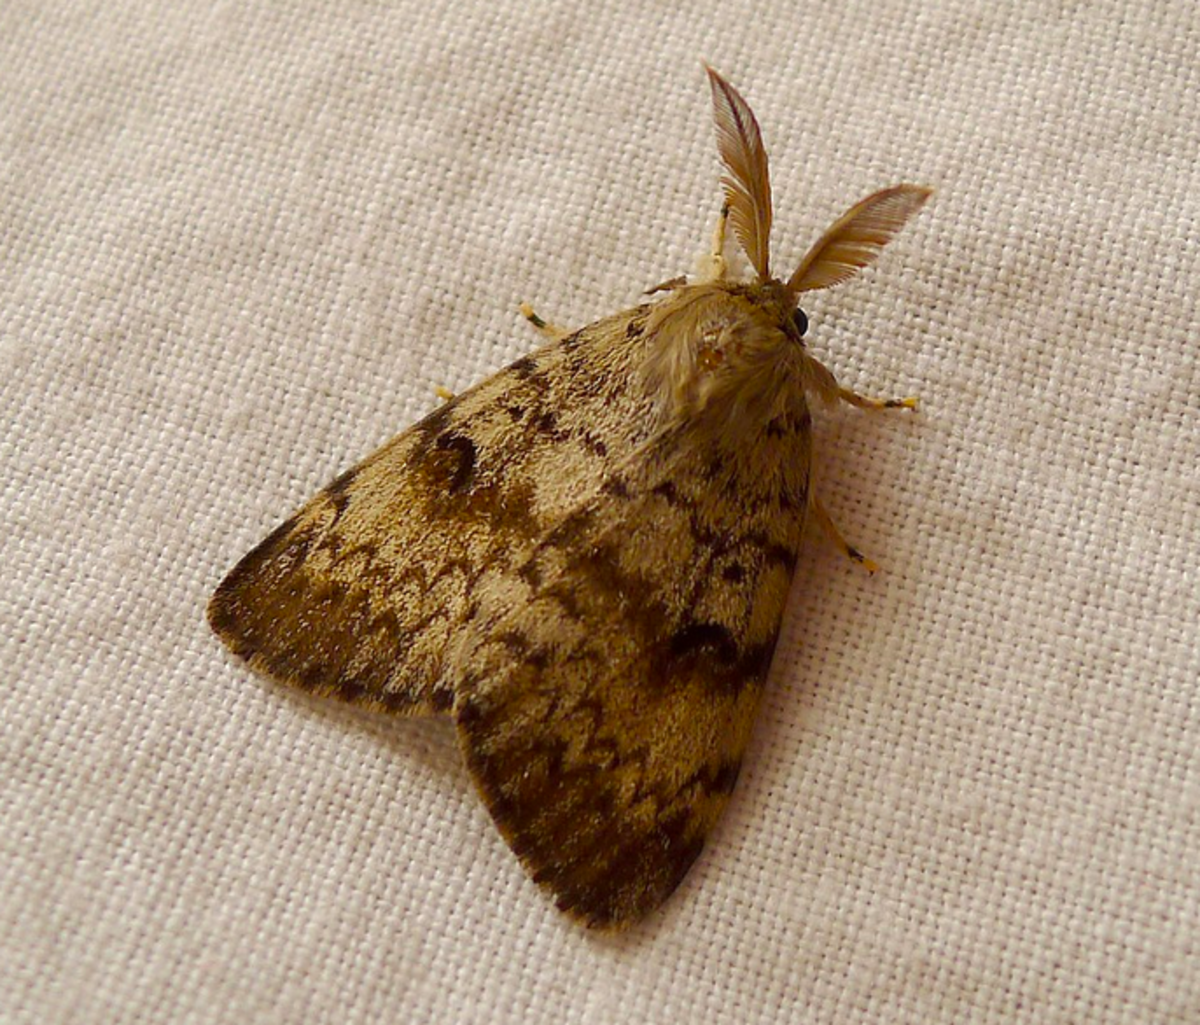 Male spongy moth